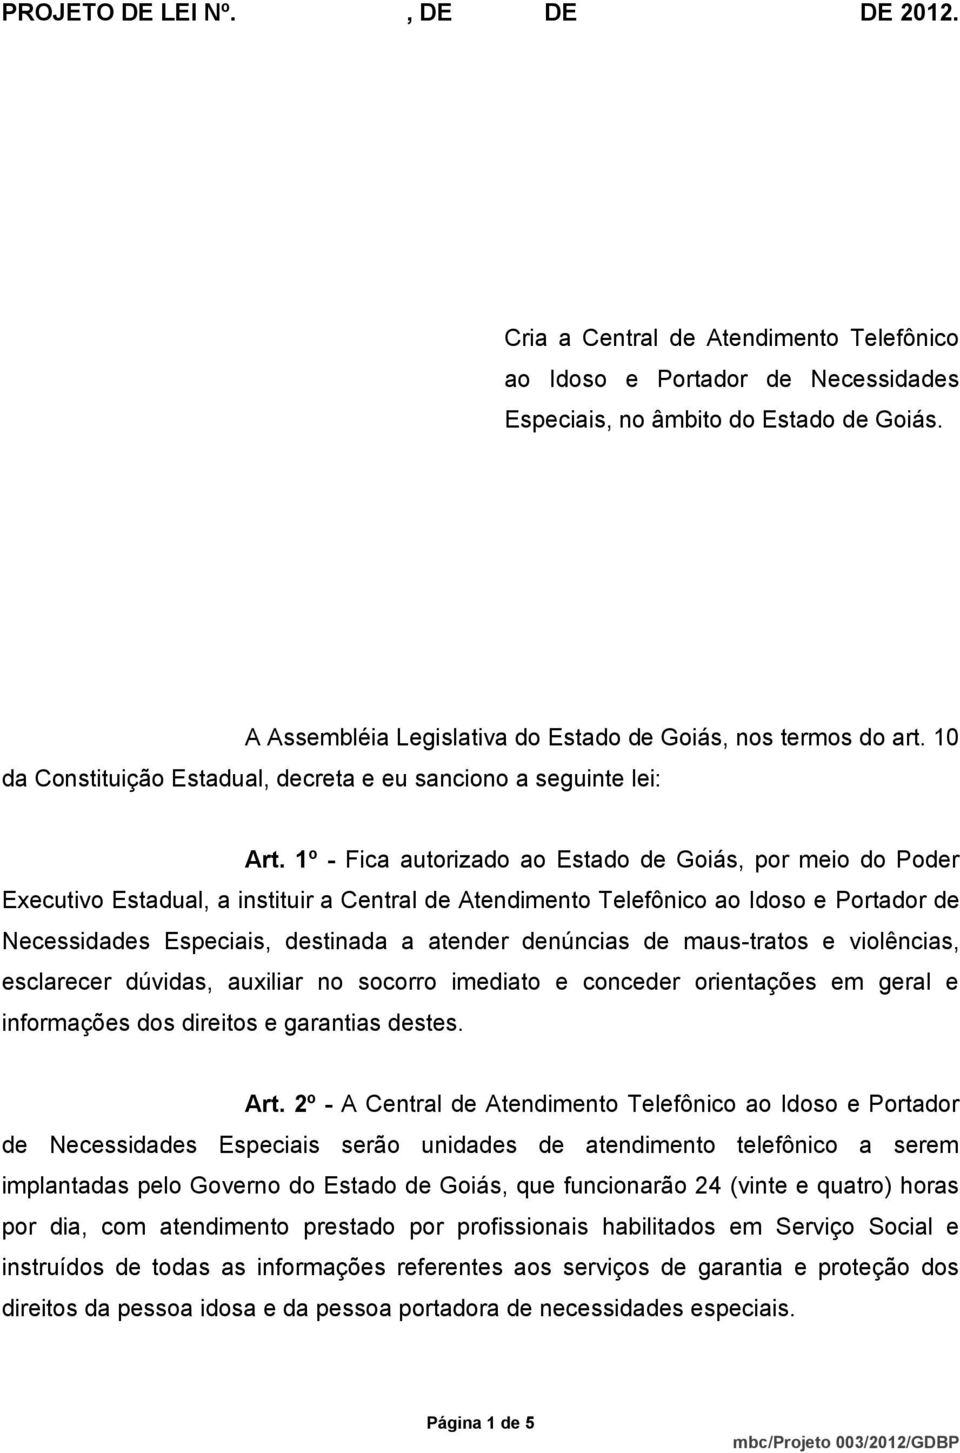 1º - Fica autorizado ao Estado de Goiás, por meio do Poder Executivo Estadual, a instituir a Central de Atendimento Telefônico ao Idoso e Portador de Necessidades Especiais, destinada a atender